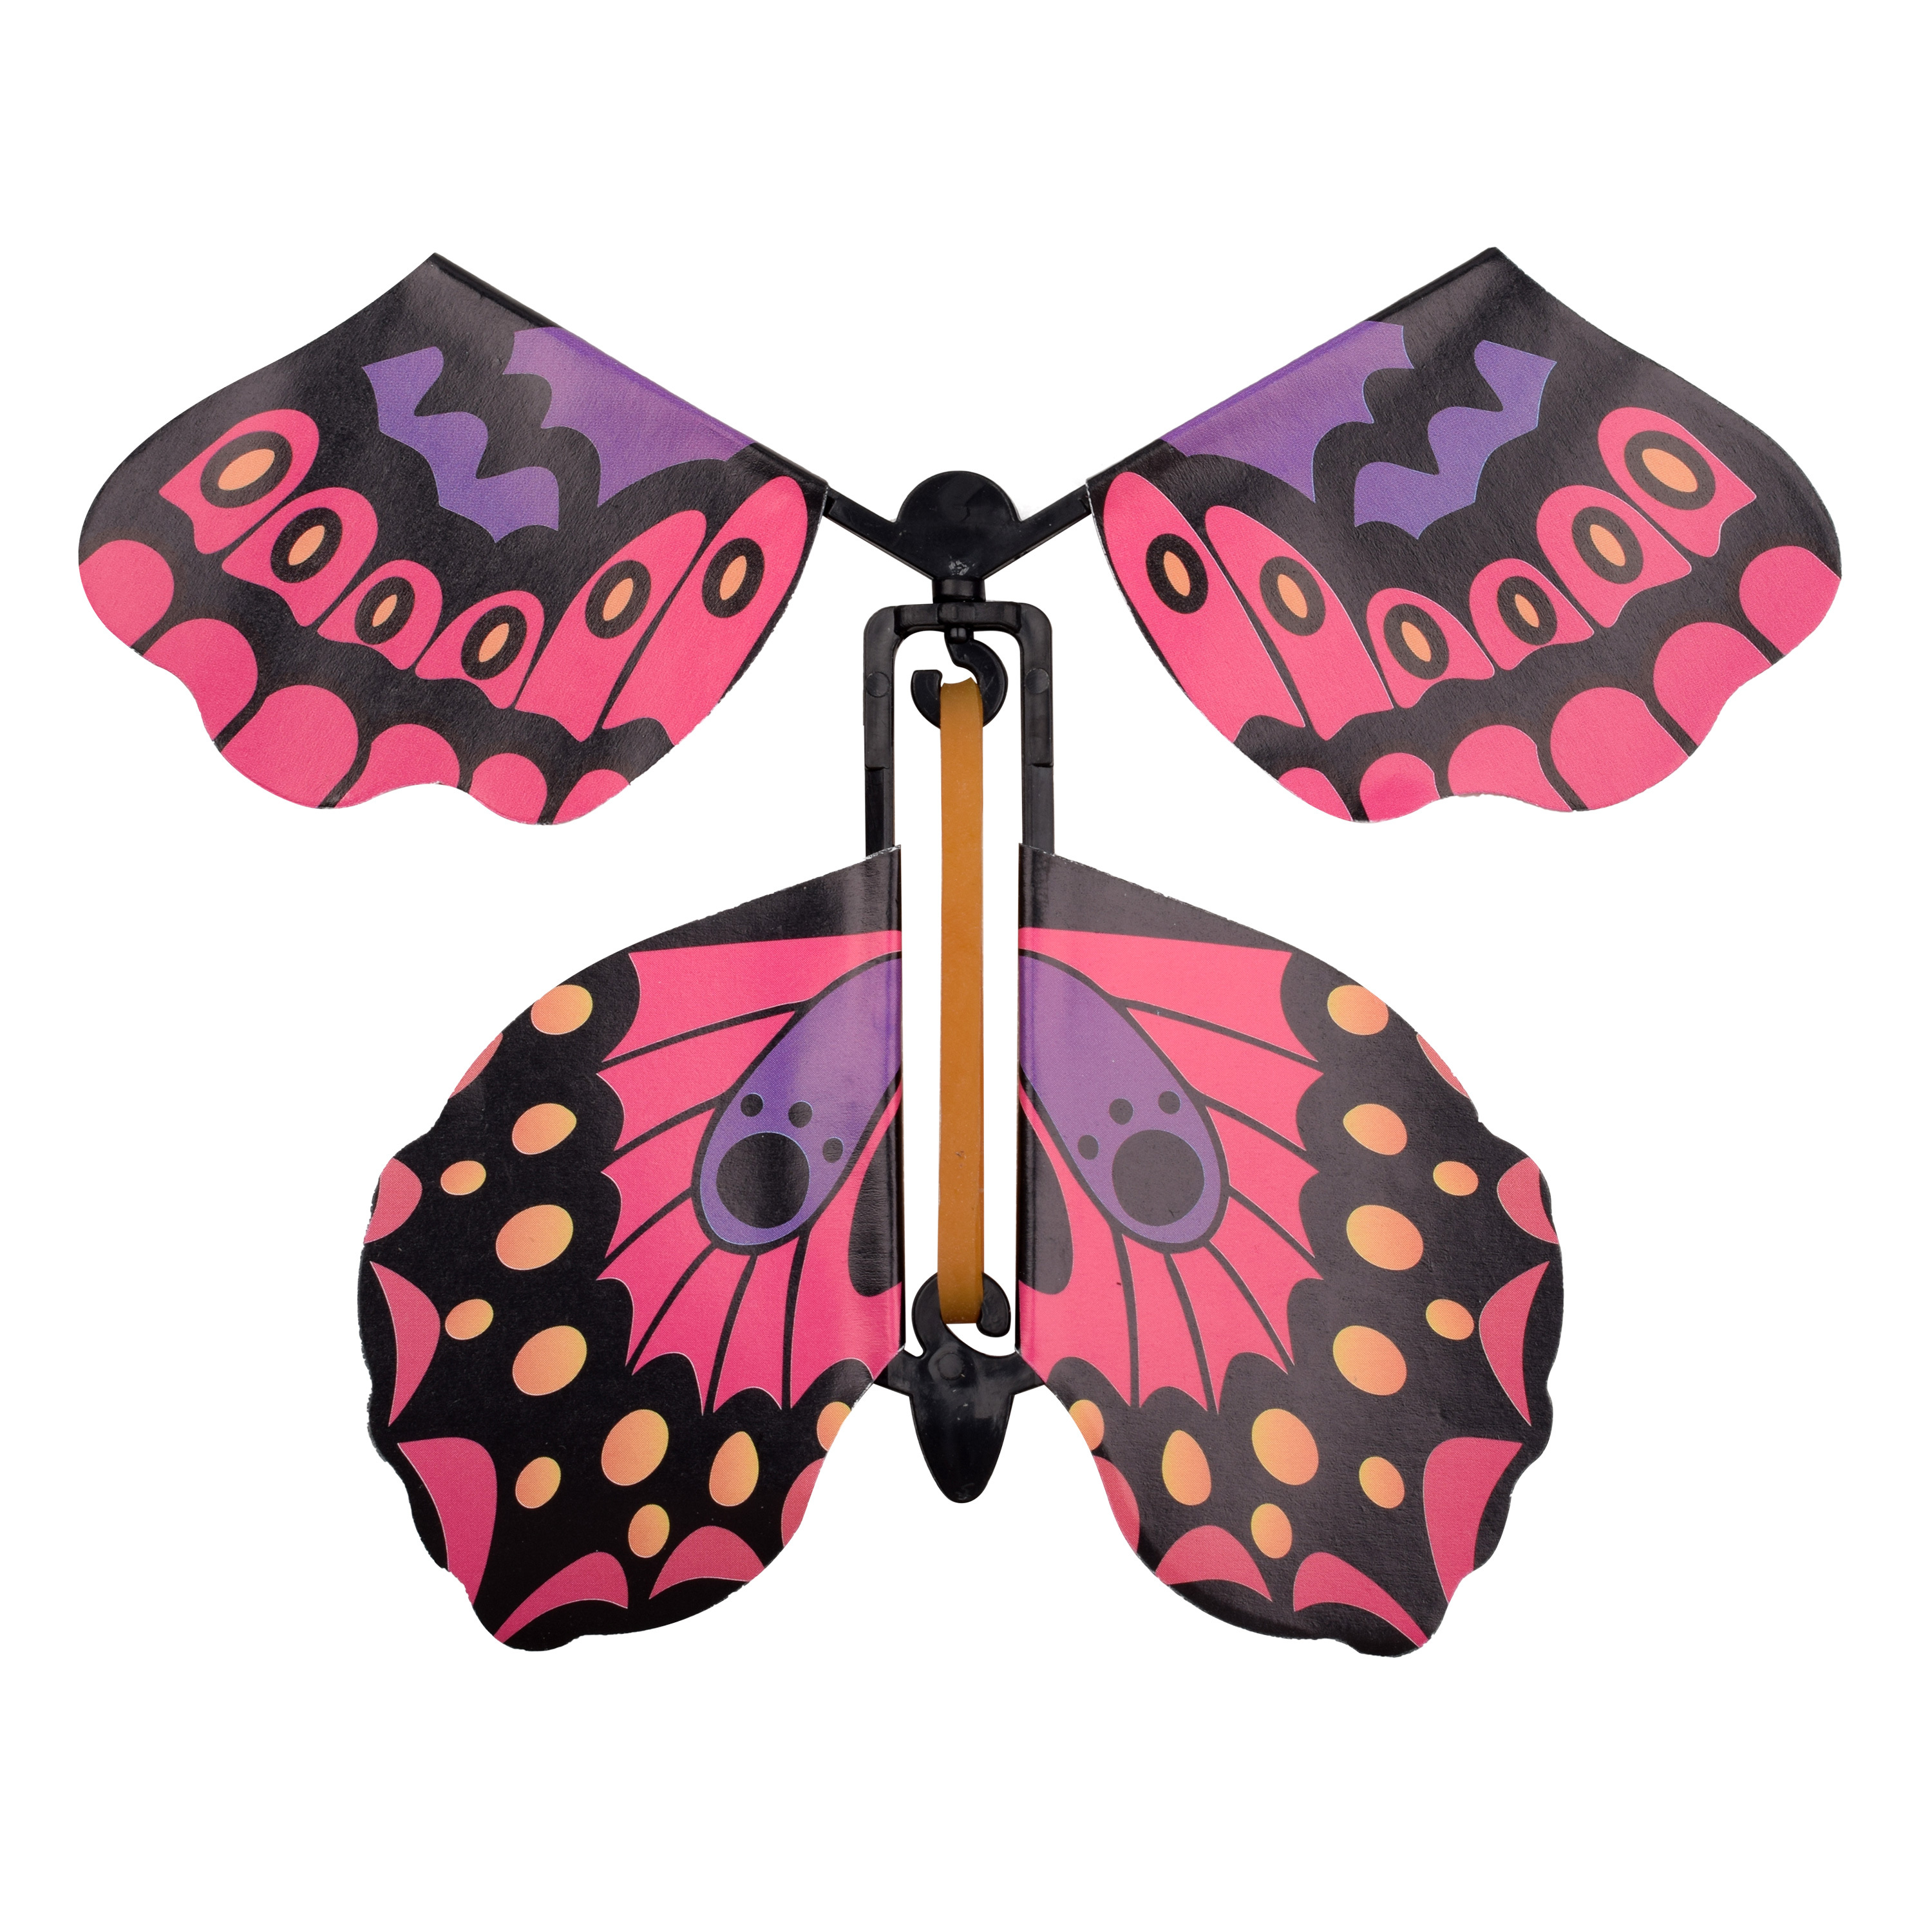 Mariposas voladoras sorpresa, interesante juguete de mariposa voladora,  mariposas mágicas voladoras, mariposa de cuerda para suministros de fiesta